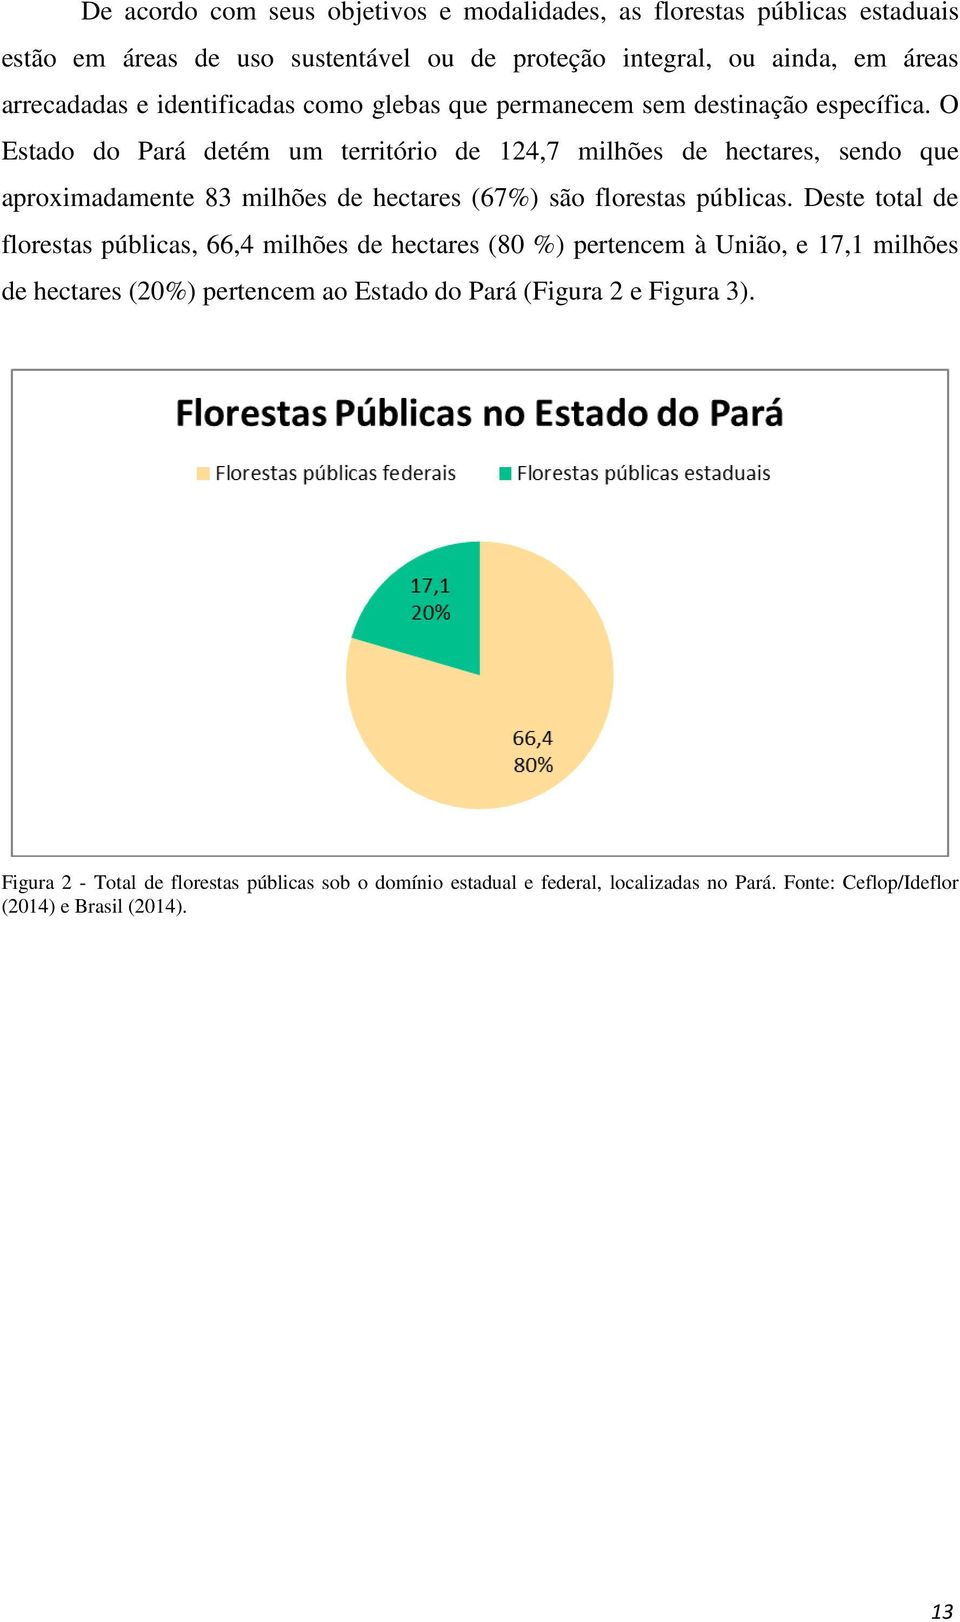 O Estado do Pará detém um território de 124,7 milhões de hectares, sendo que aproximadamente 83 milhões de hectares (67%) são florestas públicas.